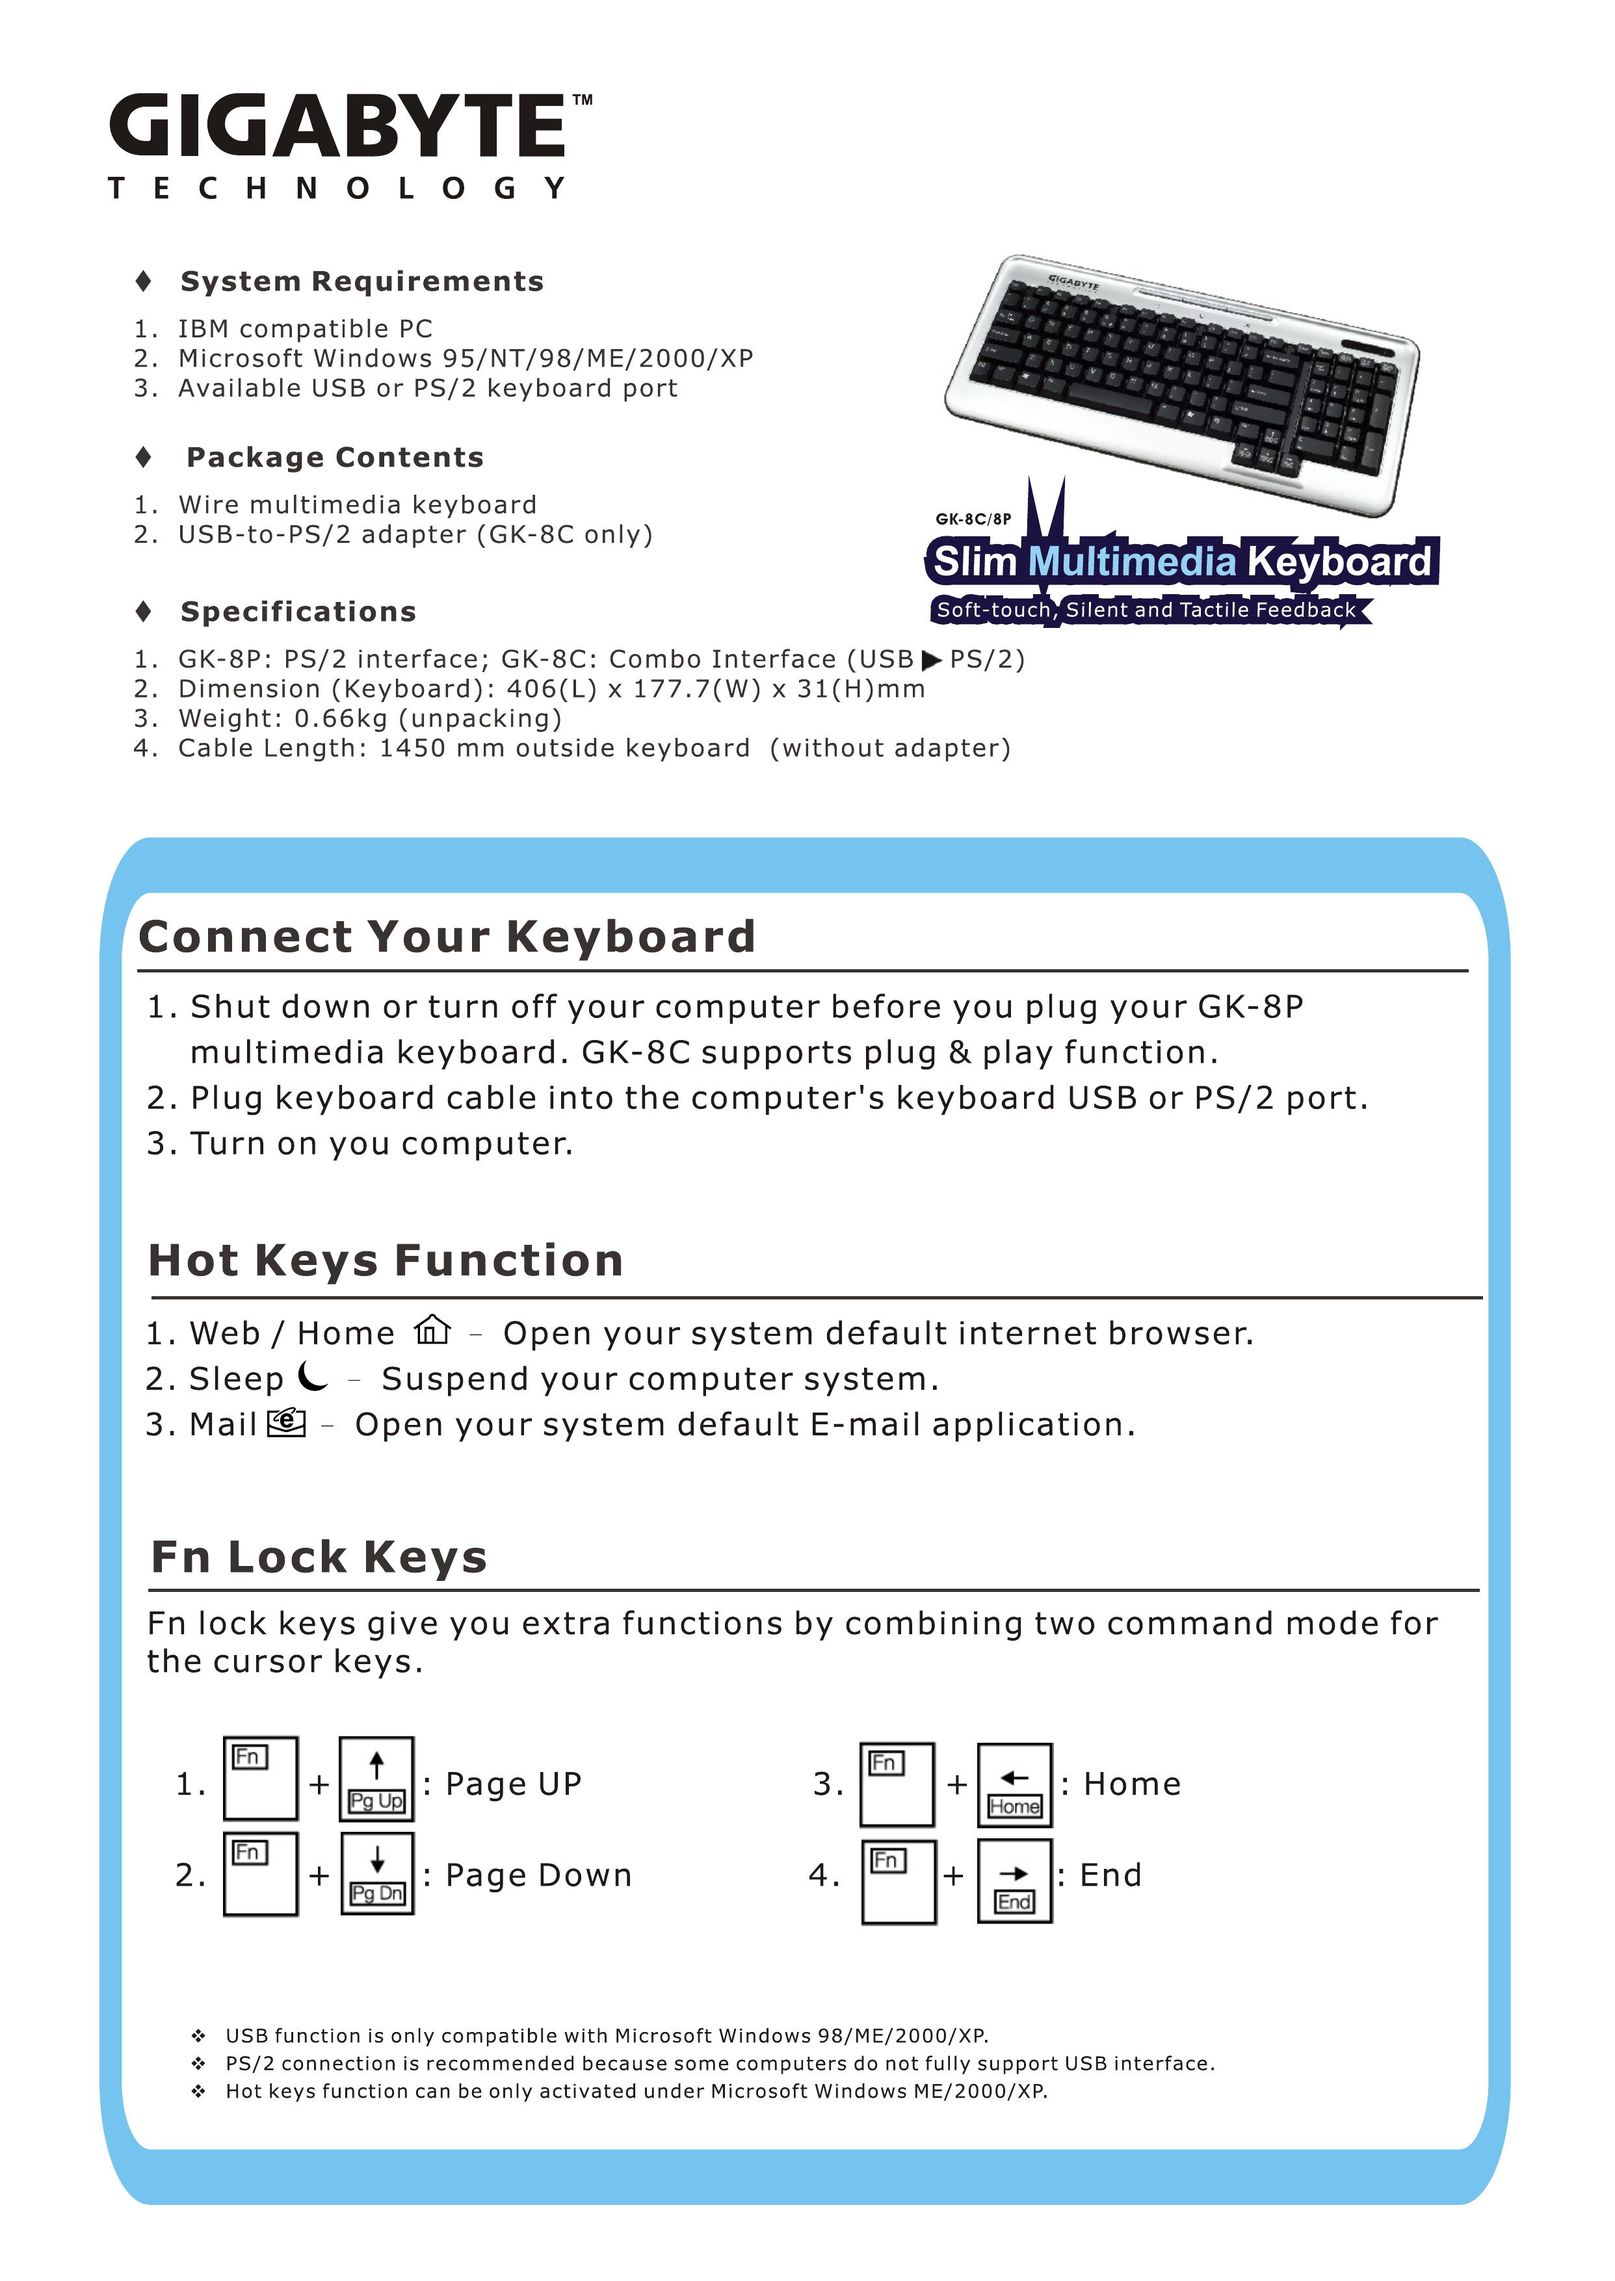 Gigabyte GK-8C Mouse User Manual